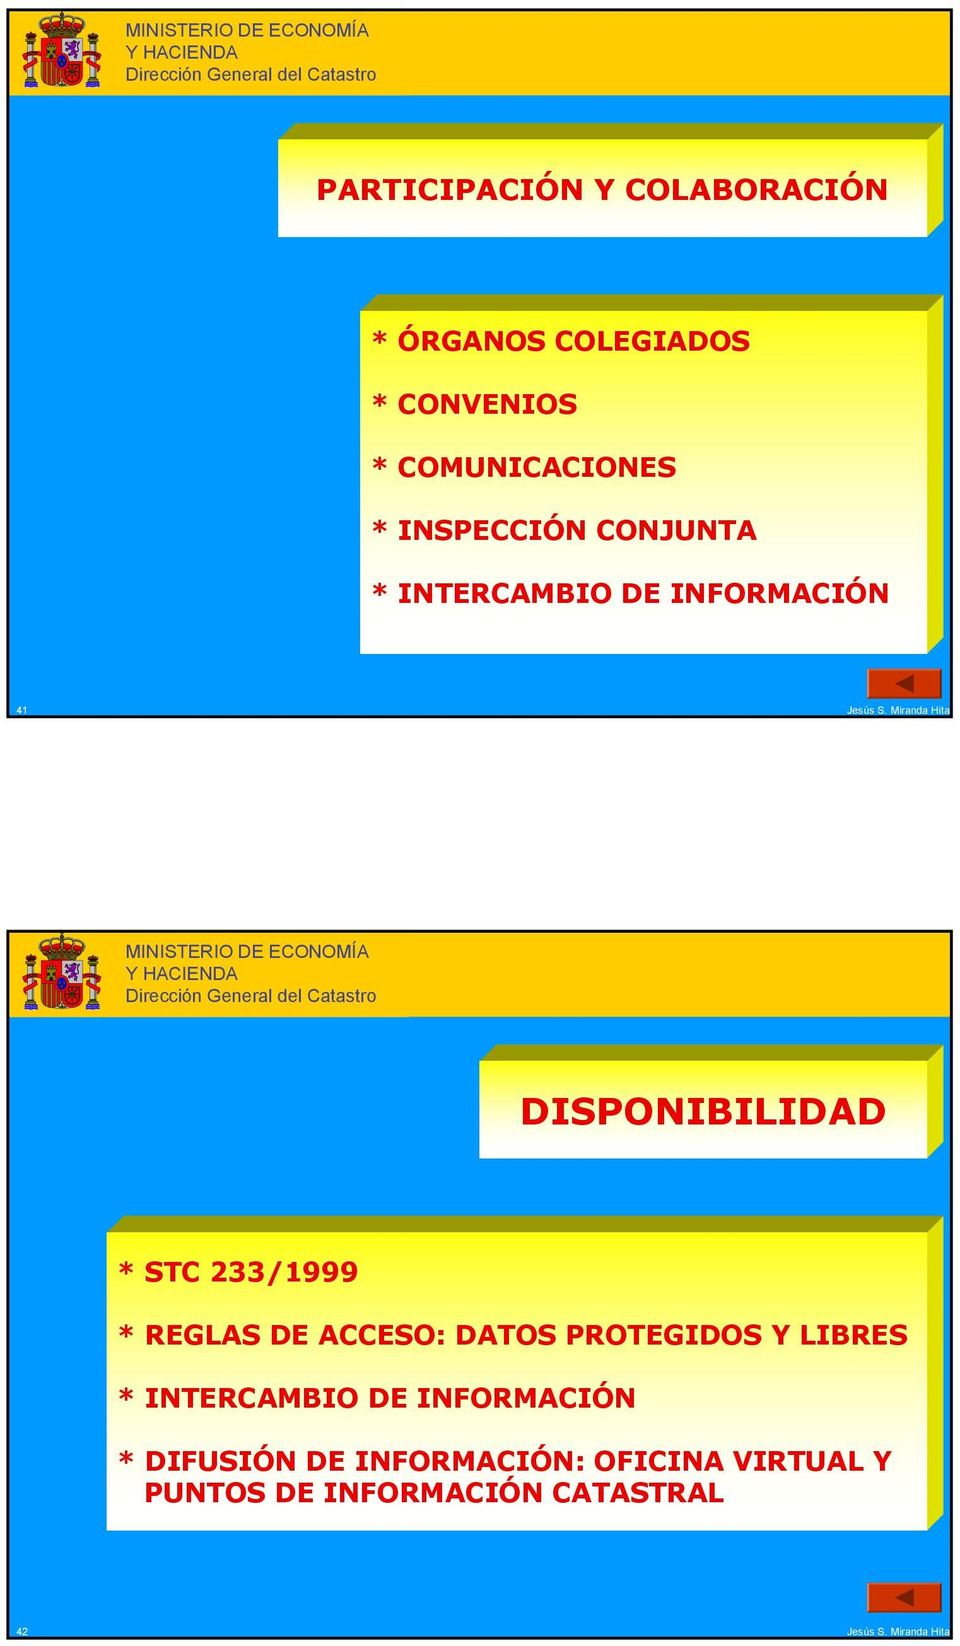 233/1999 * REGLAS DE ACCESO: DATOS PROTEGIDOS Y LIBRES * ITERCAMBIO DE